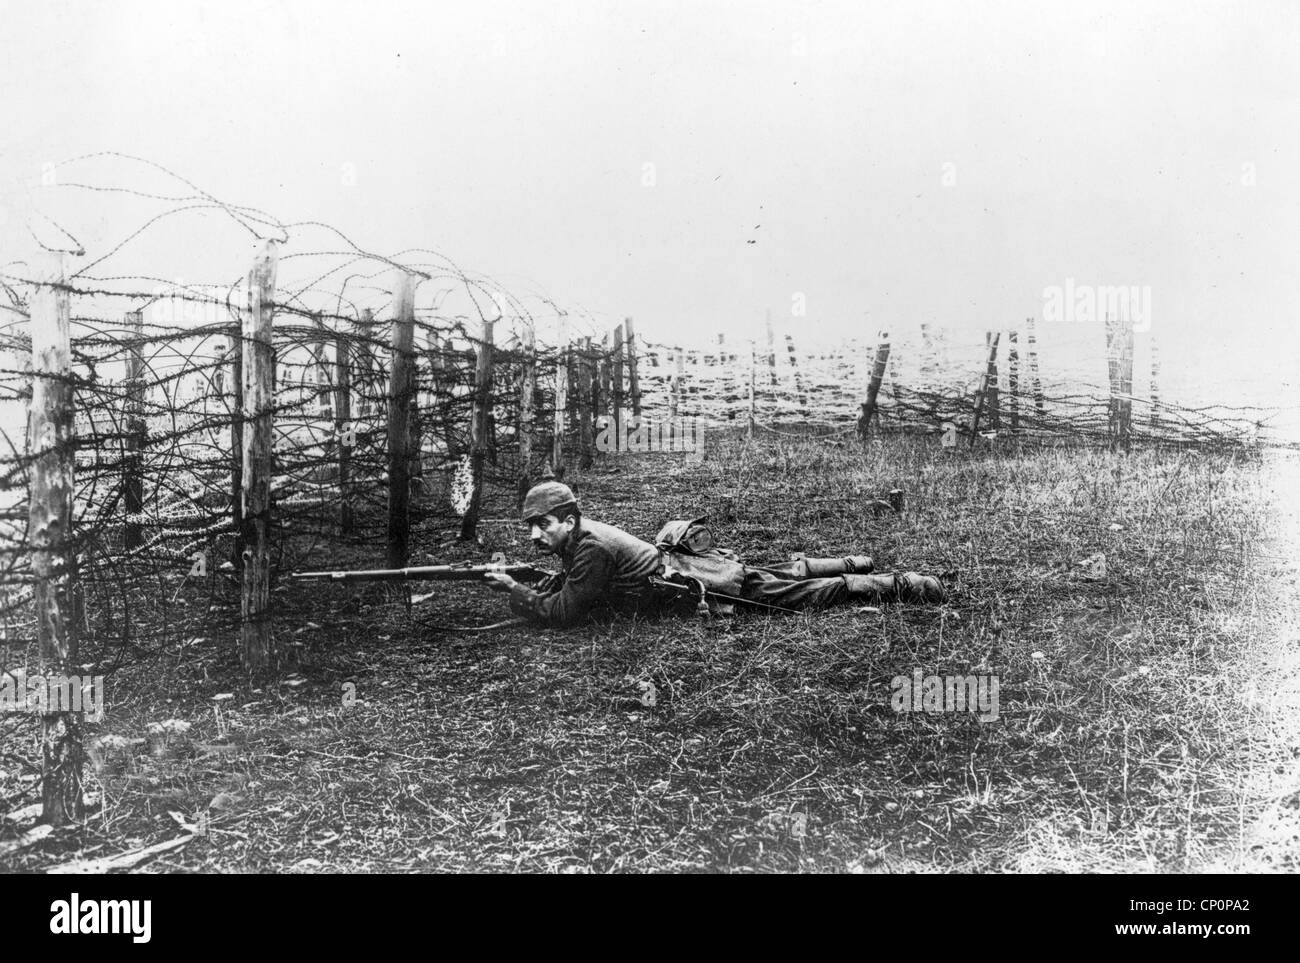 Deutsche Scharfschützen Verlegung auf Boden in der Nähe von Stacheldraht Abwehrkräfte, Weltkrieg Stockfoto